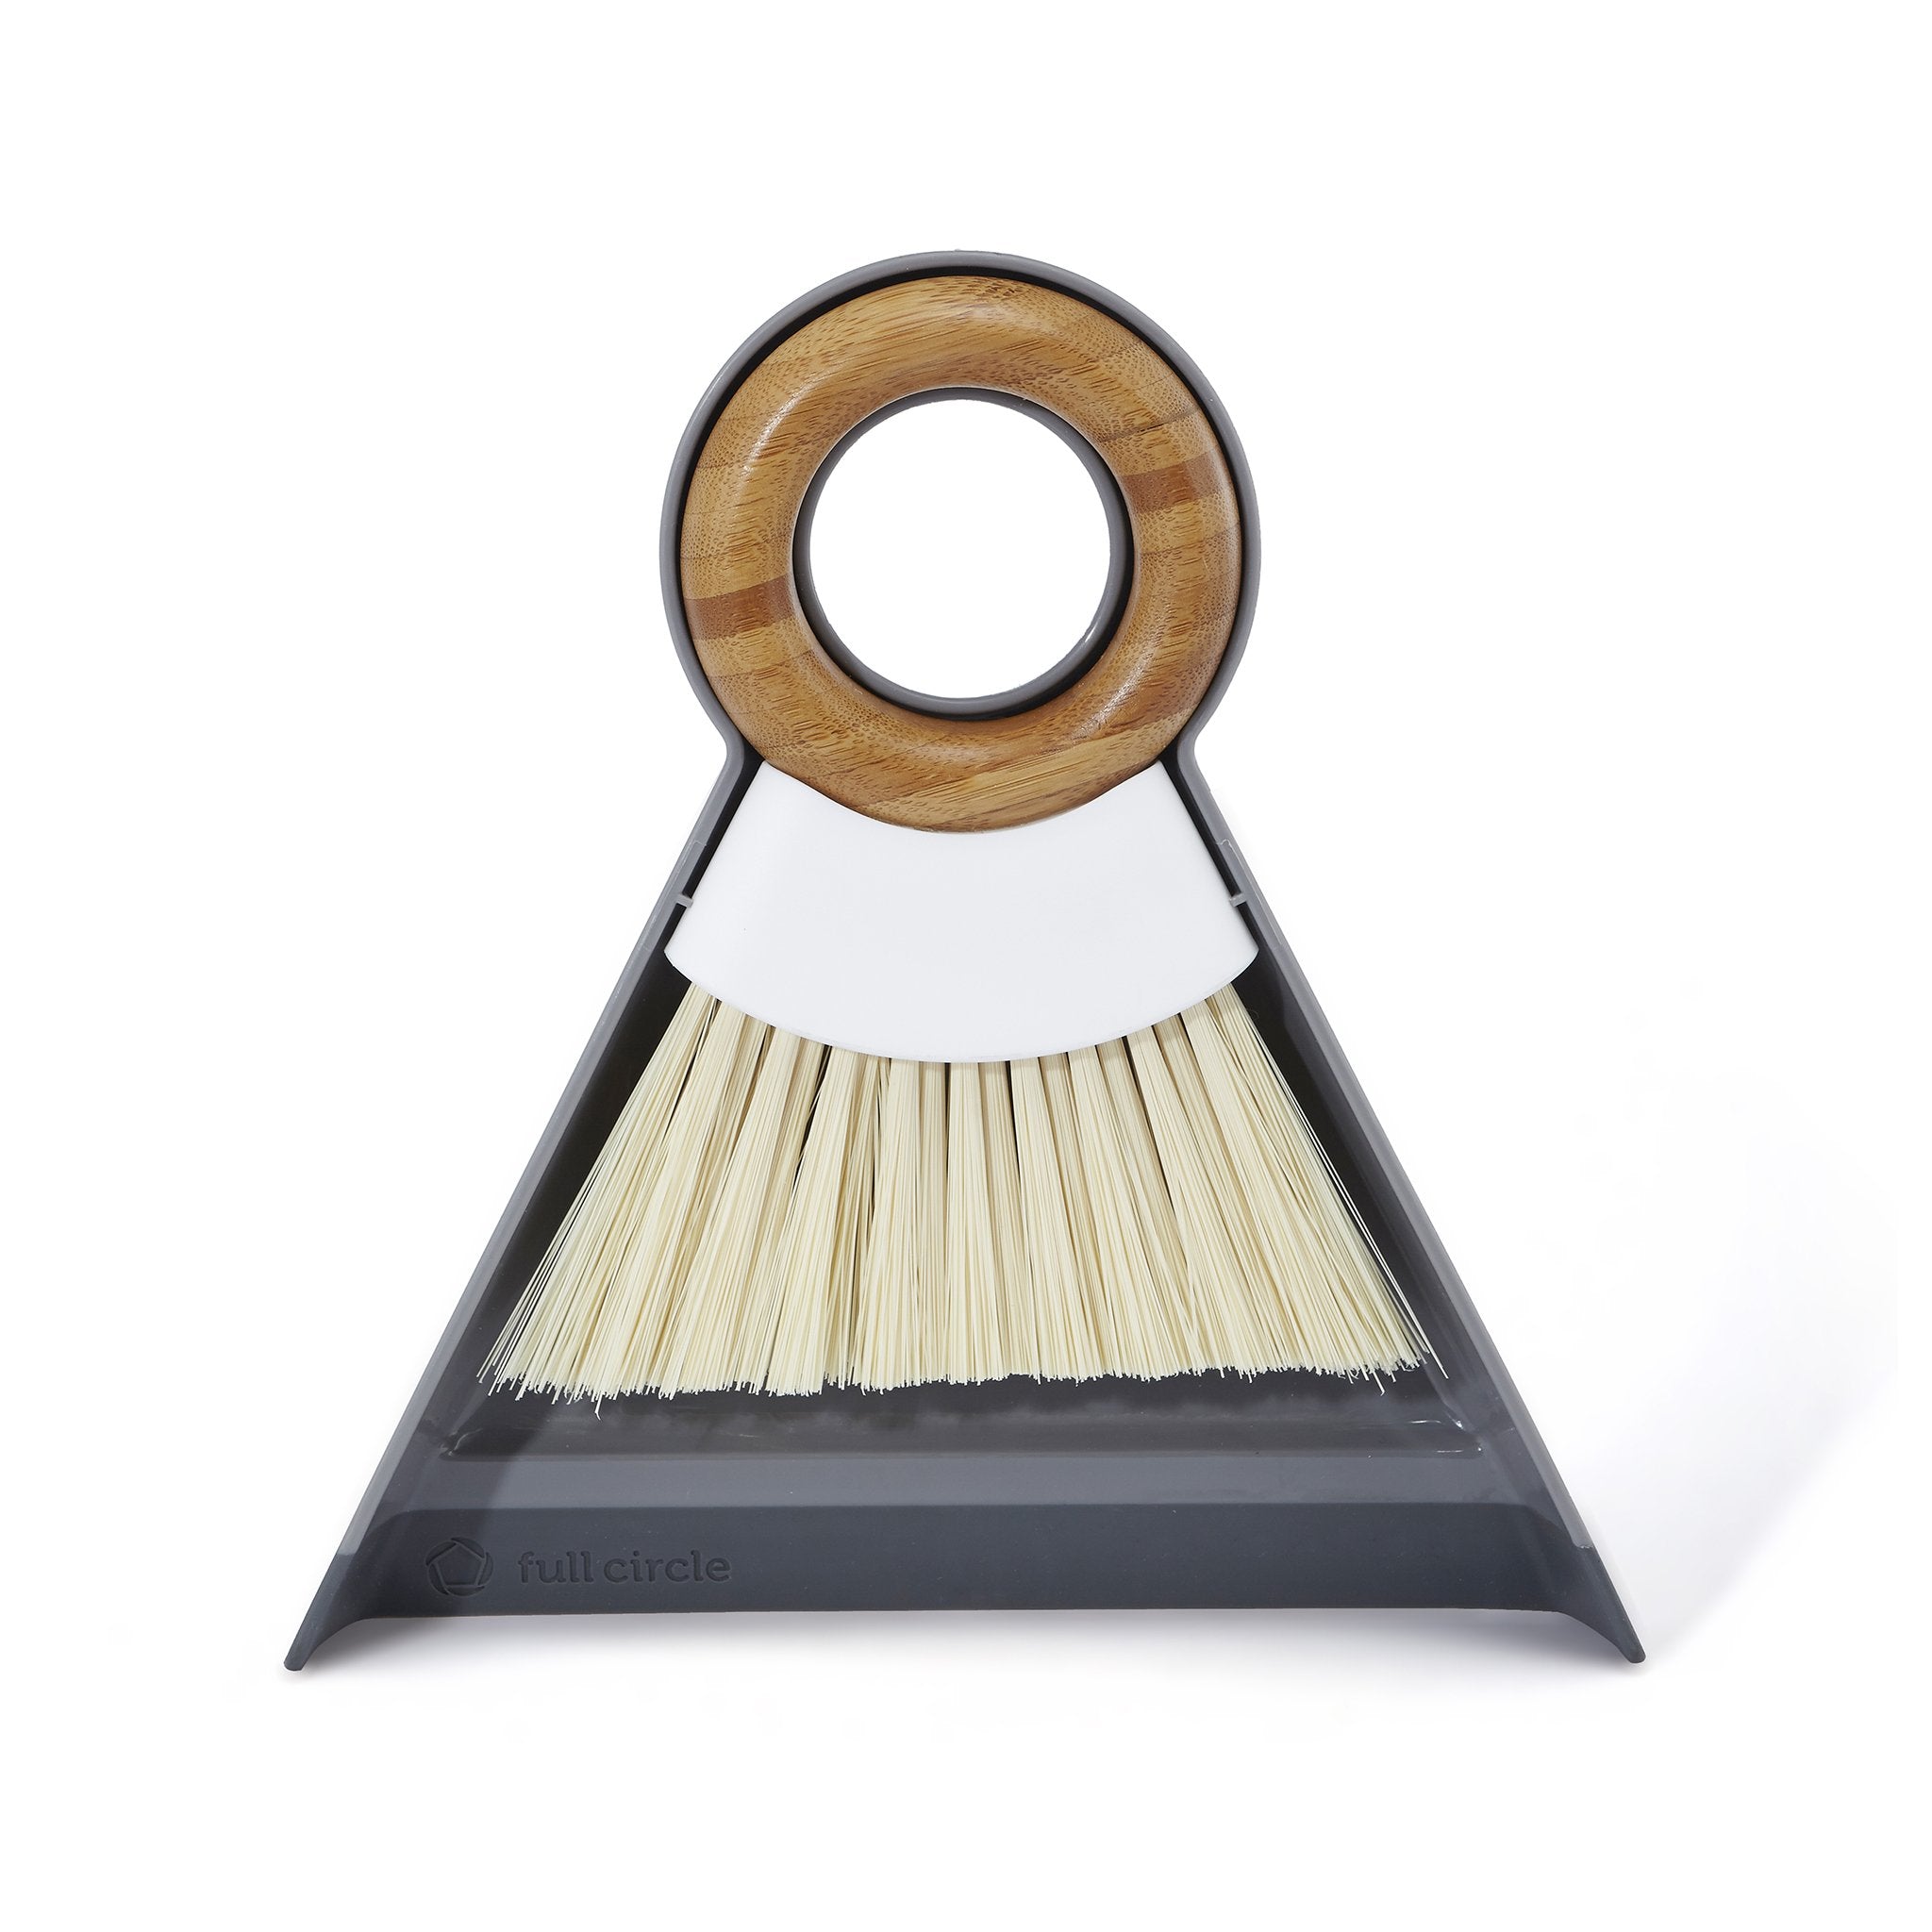 Wholesale Dust Pans & Brooms - Assorted Colors, Mini